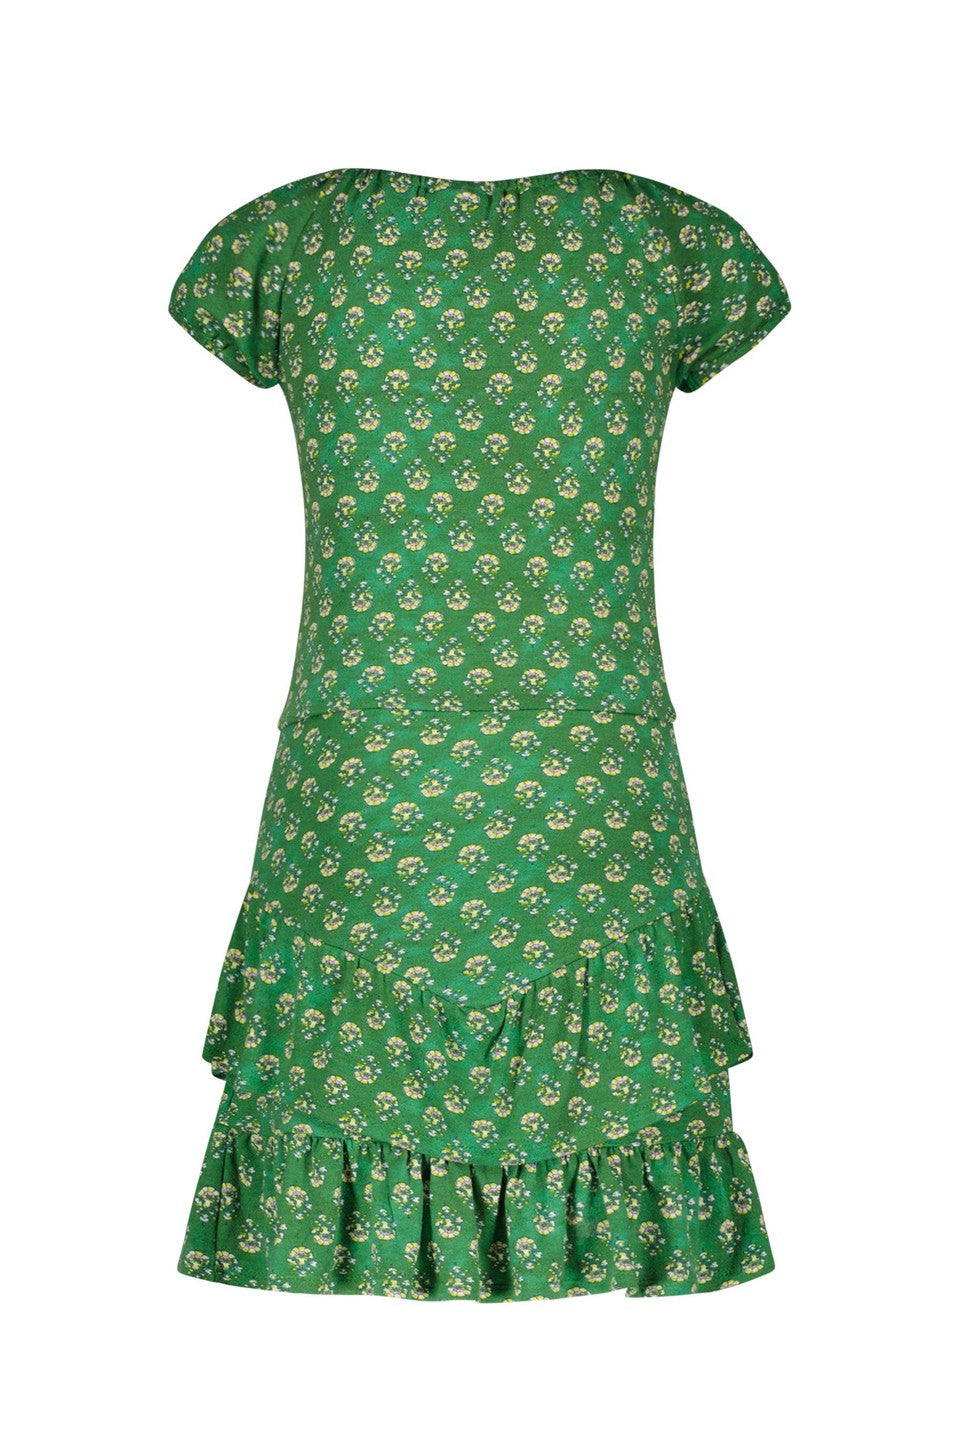 Meisjes Crepe Jersey Dress van Like Flo in de kleur Green flower in maat 140.